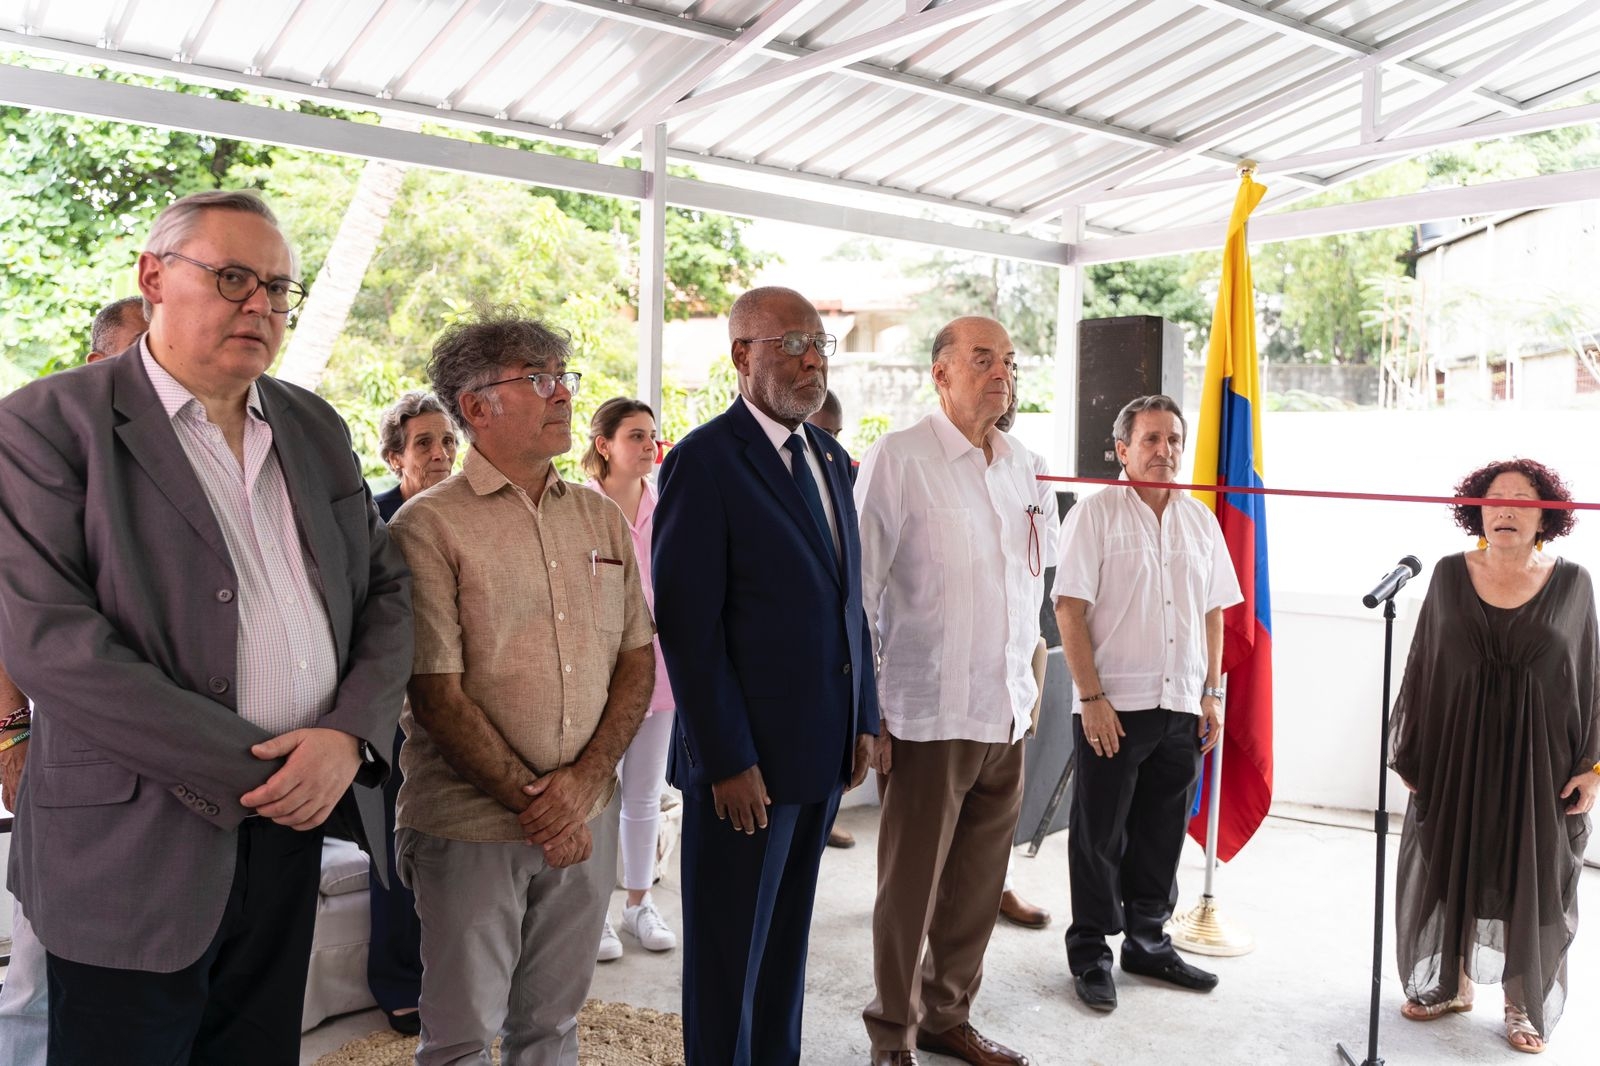 La apertura del consulado en Puerto Príncipe es el inicio de un nuevo capítulo de hermandad entre Colombia y Haití, dijo el canciller Leyva